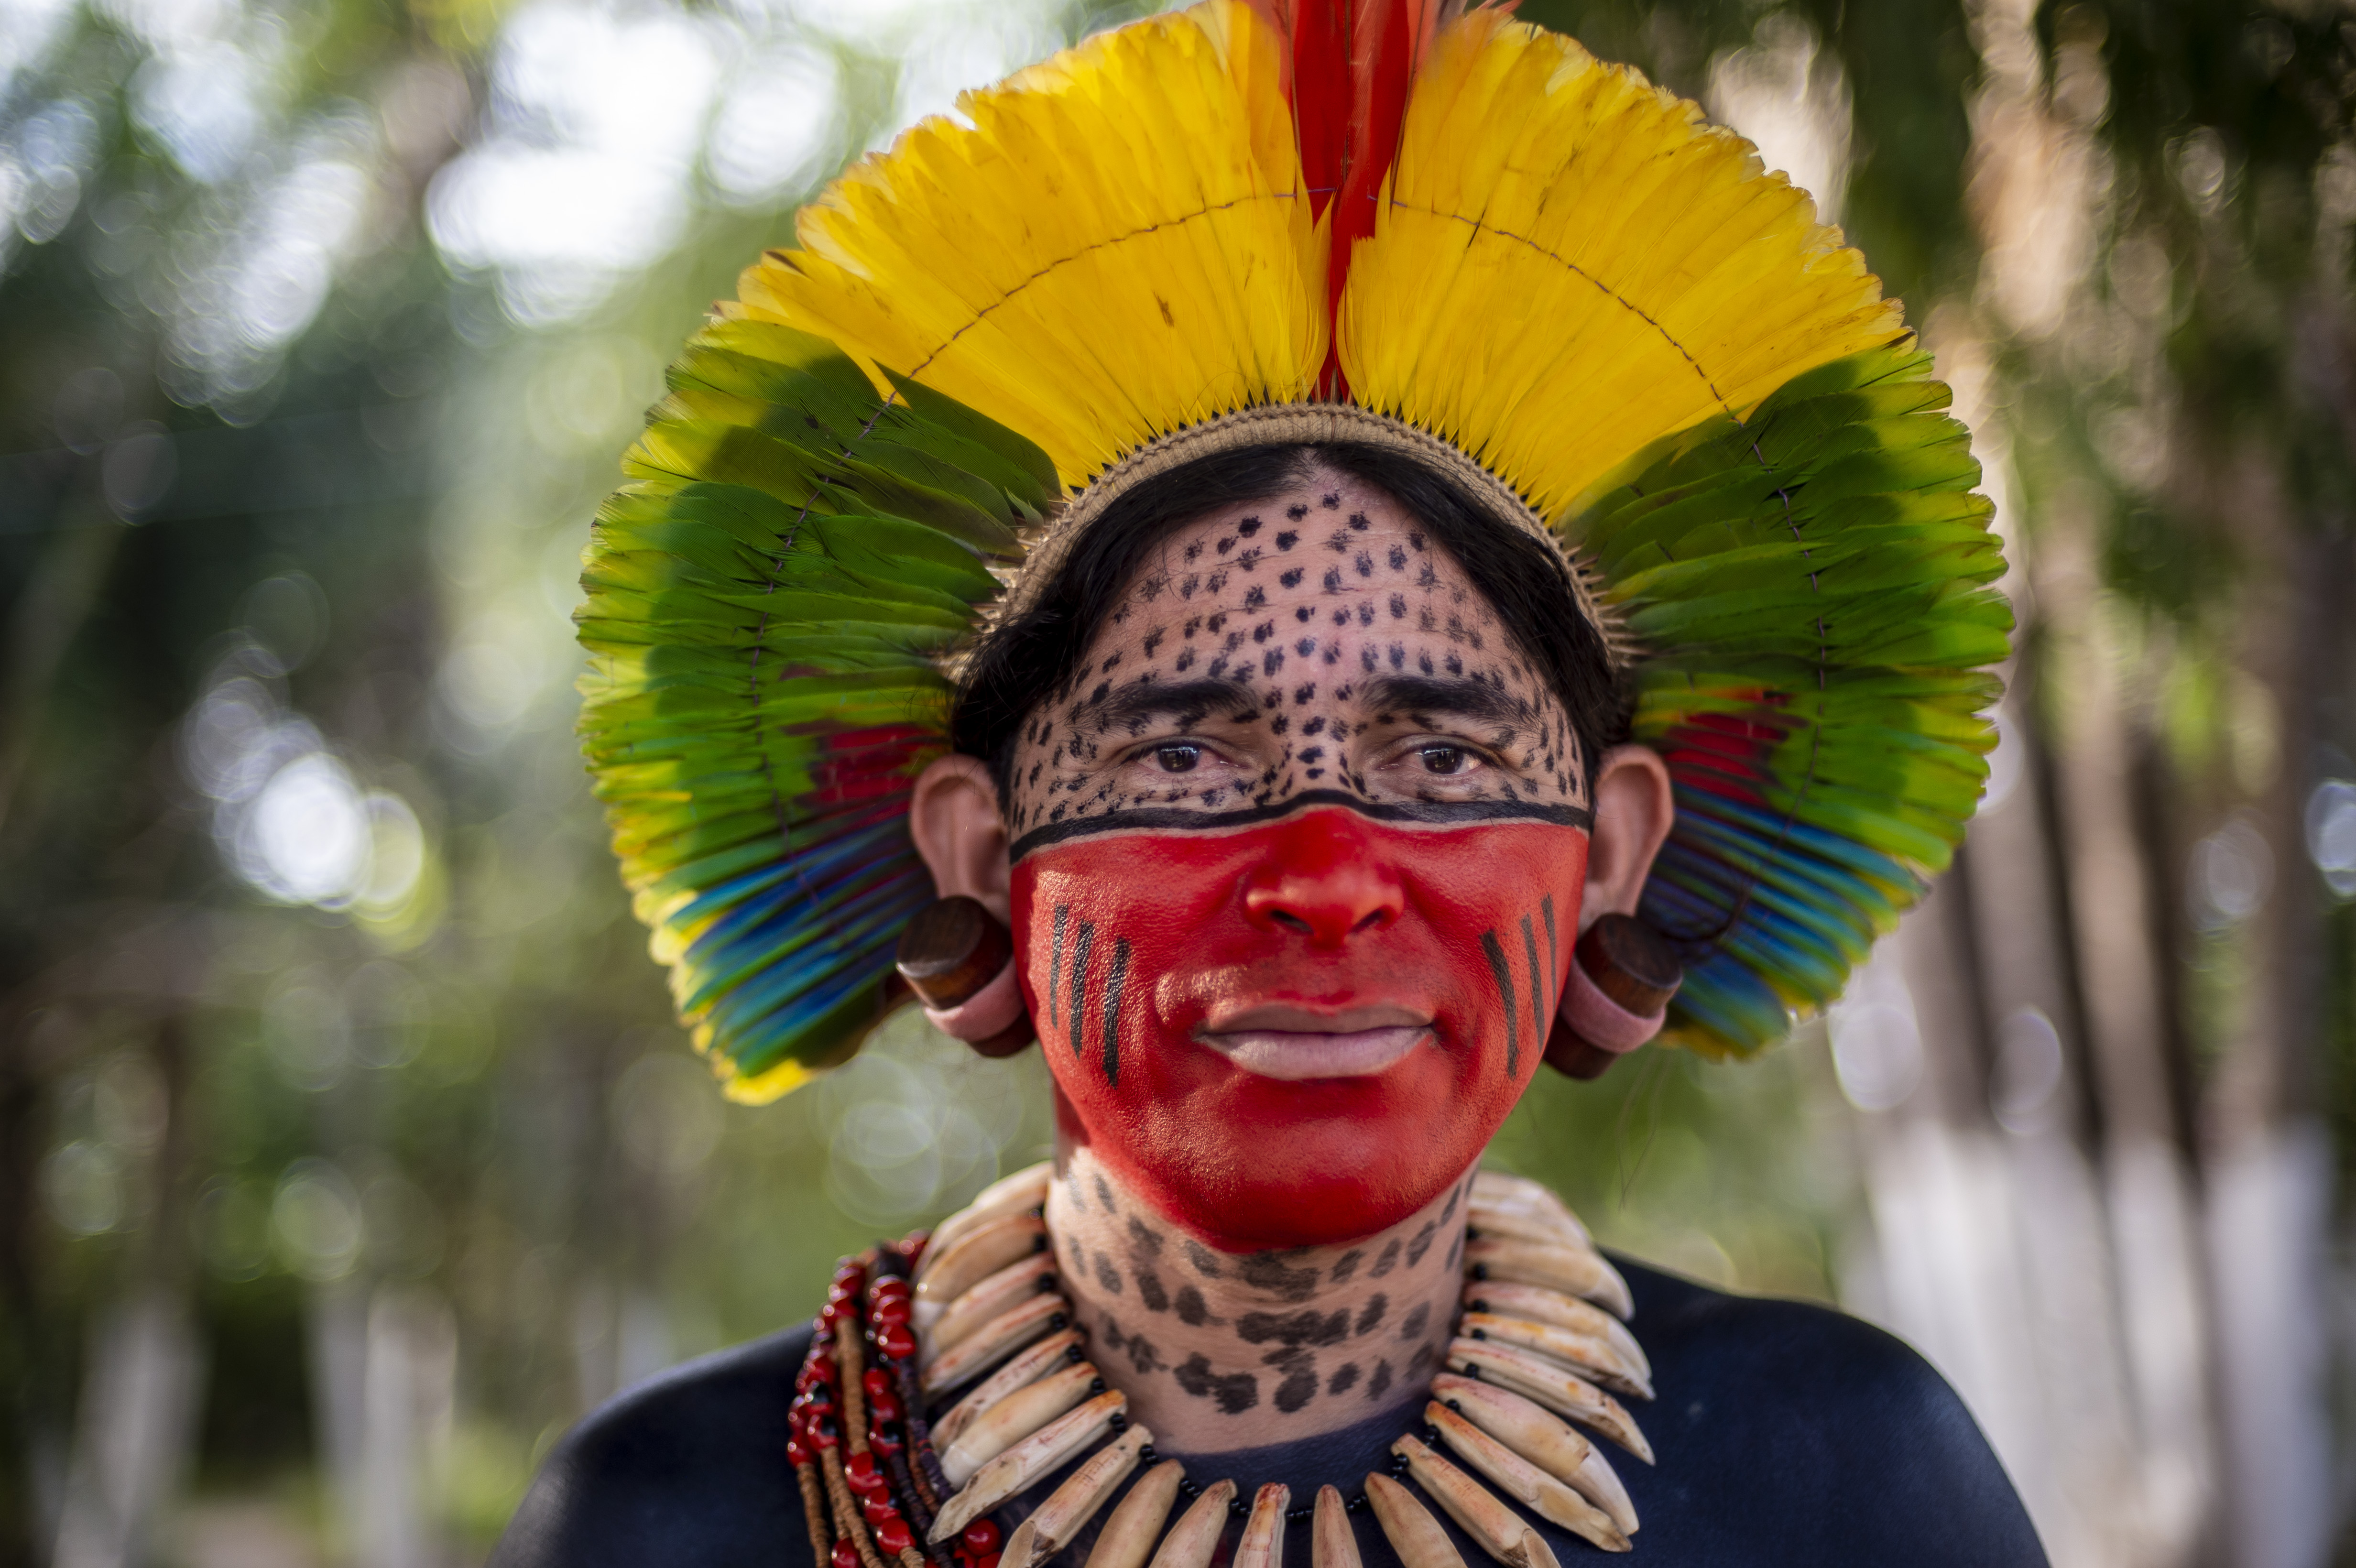 Mulher indígena olha para a câmera. Ela usa um cocá com as cores verde, amarelo e vermelho. Possui metade do rosto com pintas pretas, enquanto a outra está com tinta vermelha. Usa um colar de madeira.